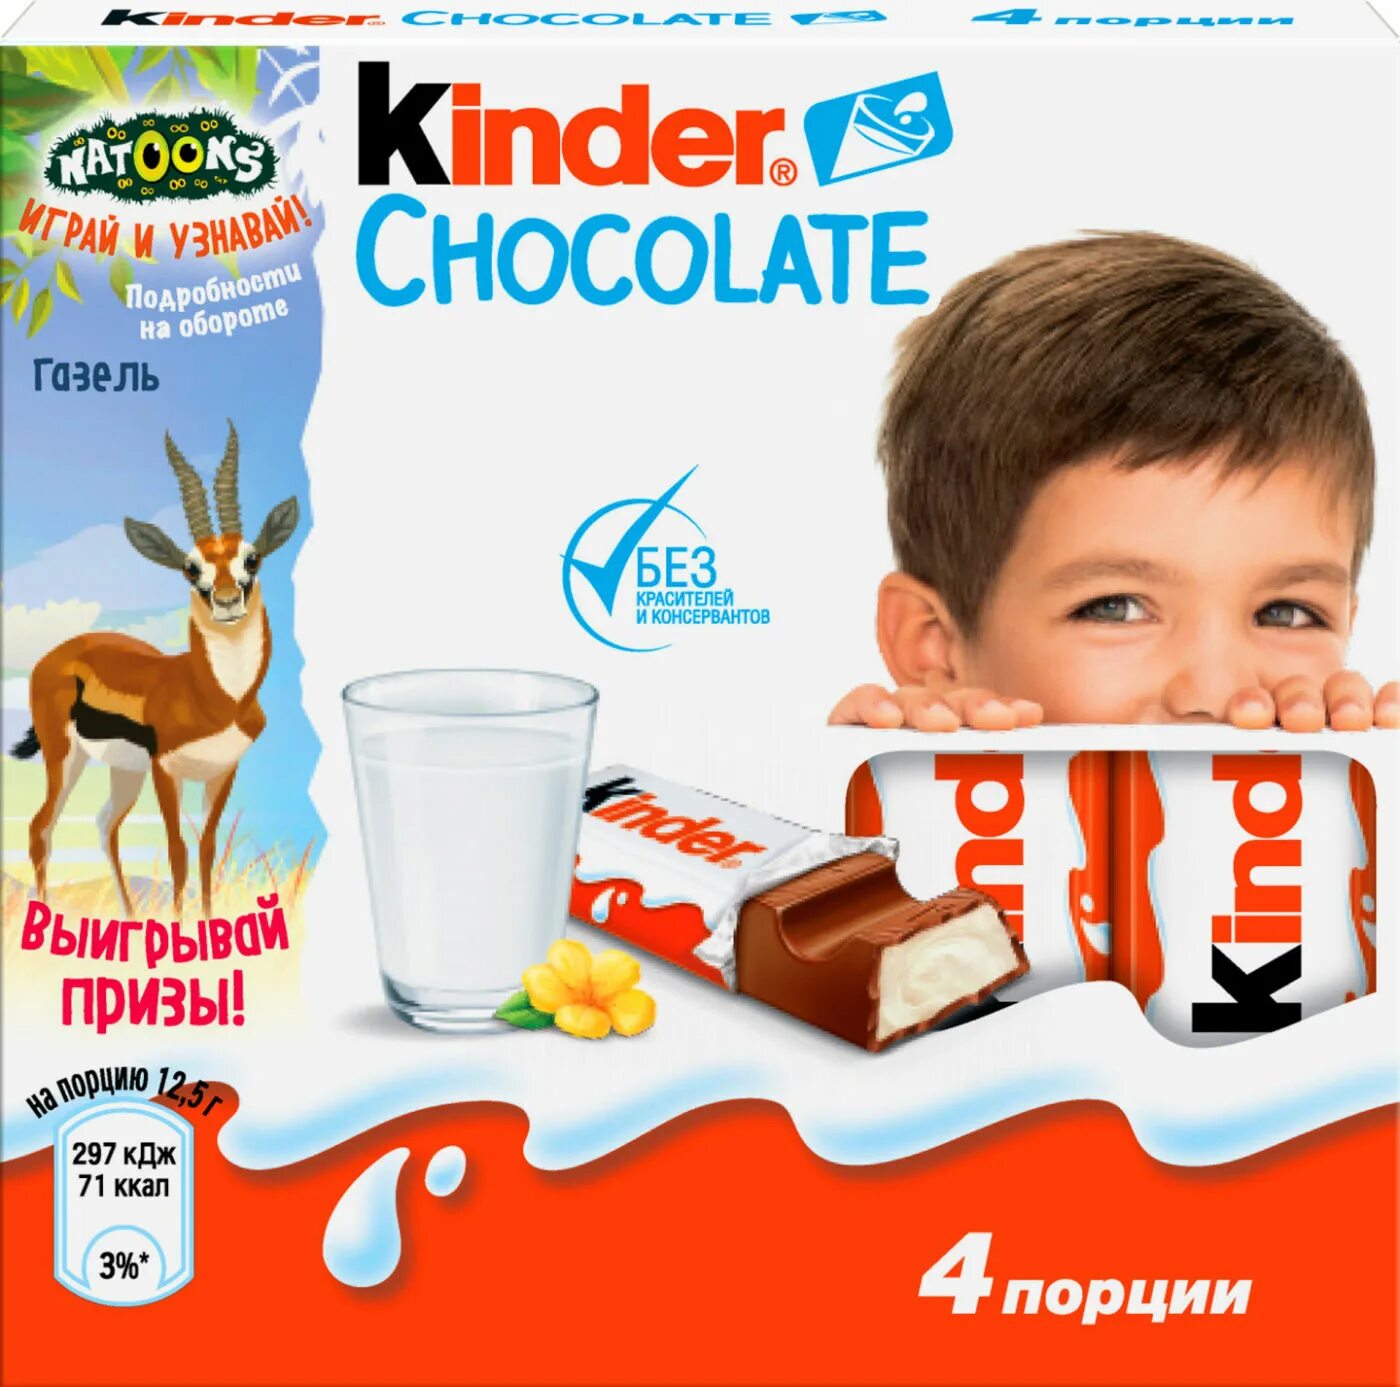 Шоколад молочный kinder Chocolate 50гр. Киндер шоколад молочный 50 гр. Киндер шоколад т4 50г. Шоколад Киндер молочный с молочной начинкой 50г.